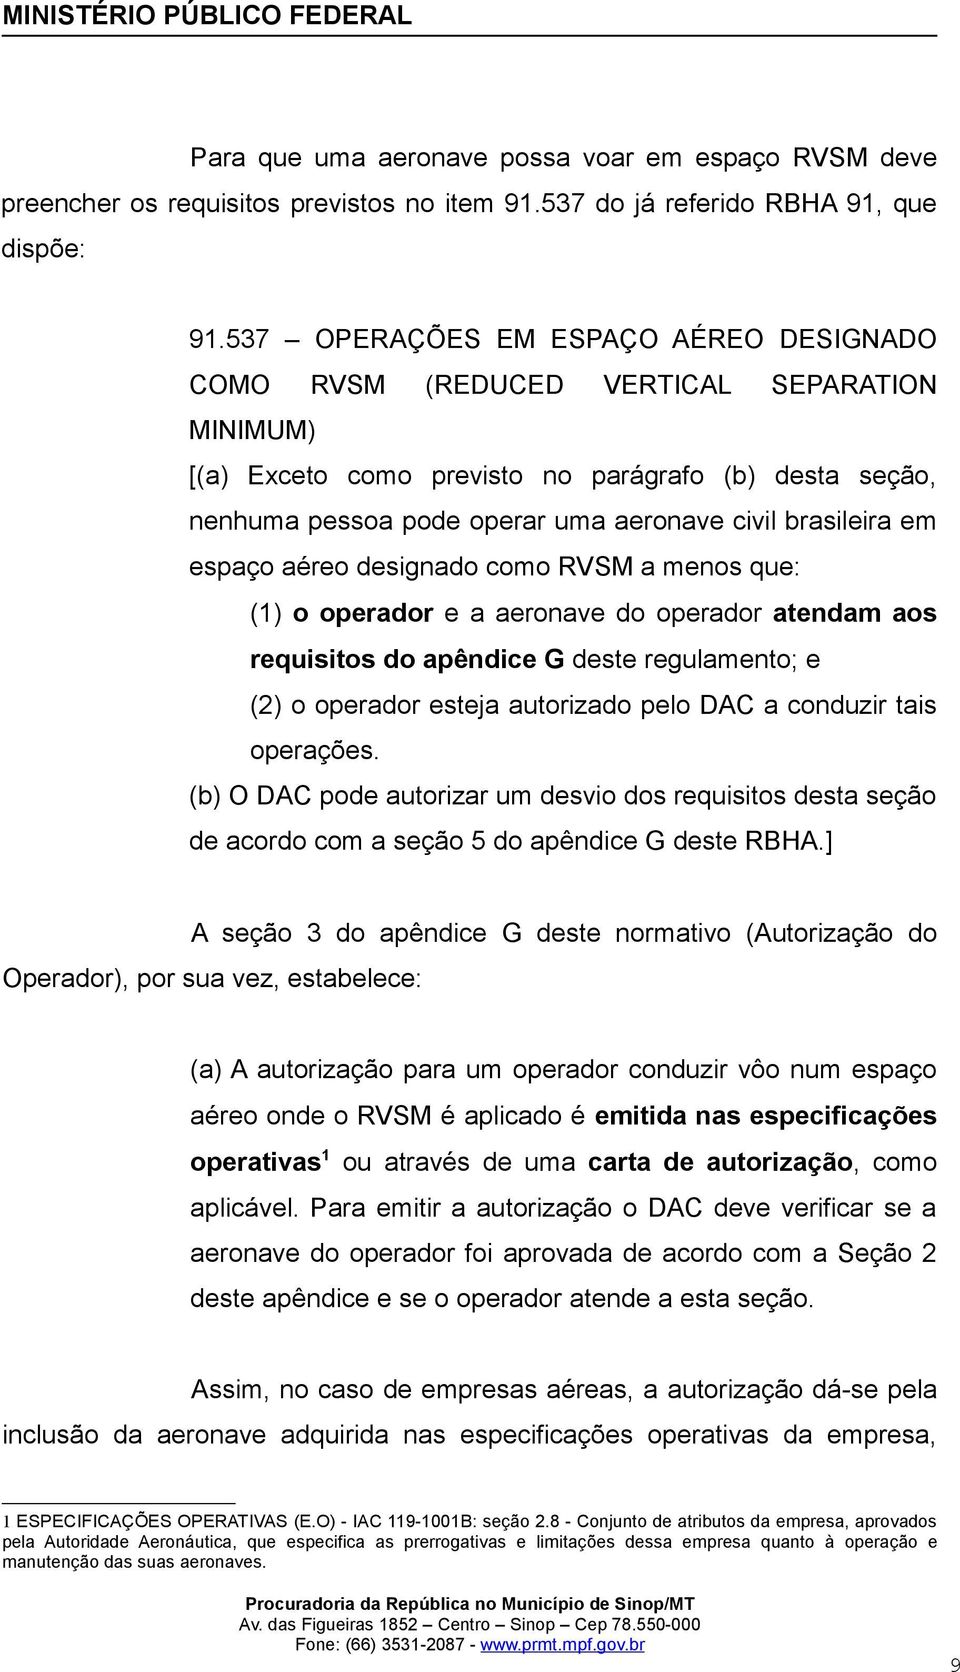 brasileira em espaço aéreo designado como RVSM a menos que: (1) o operador e a aeronave do operador atendam aos requisitos do apêndice G deste regulamento; e (2) o operador esteja autorizado pelo DAC